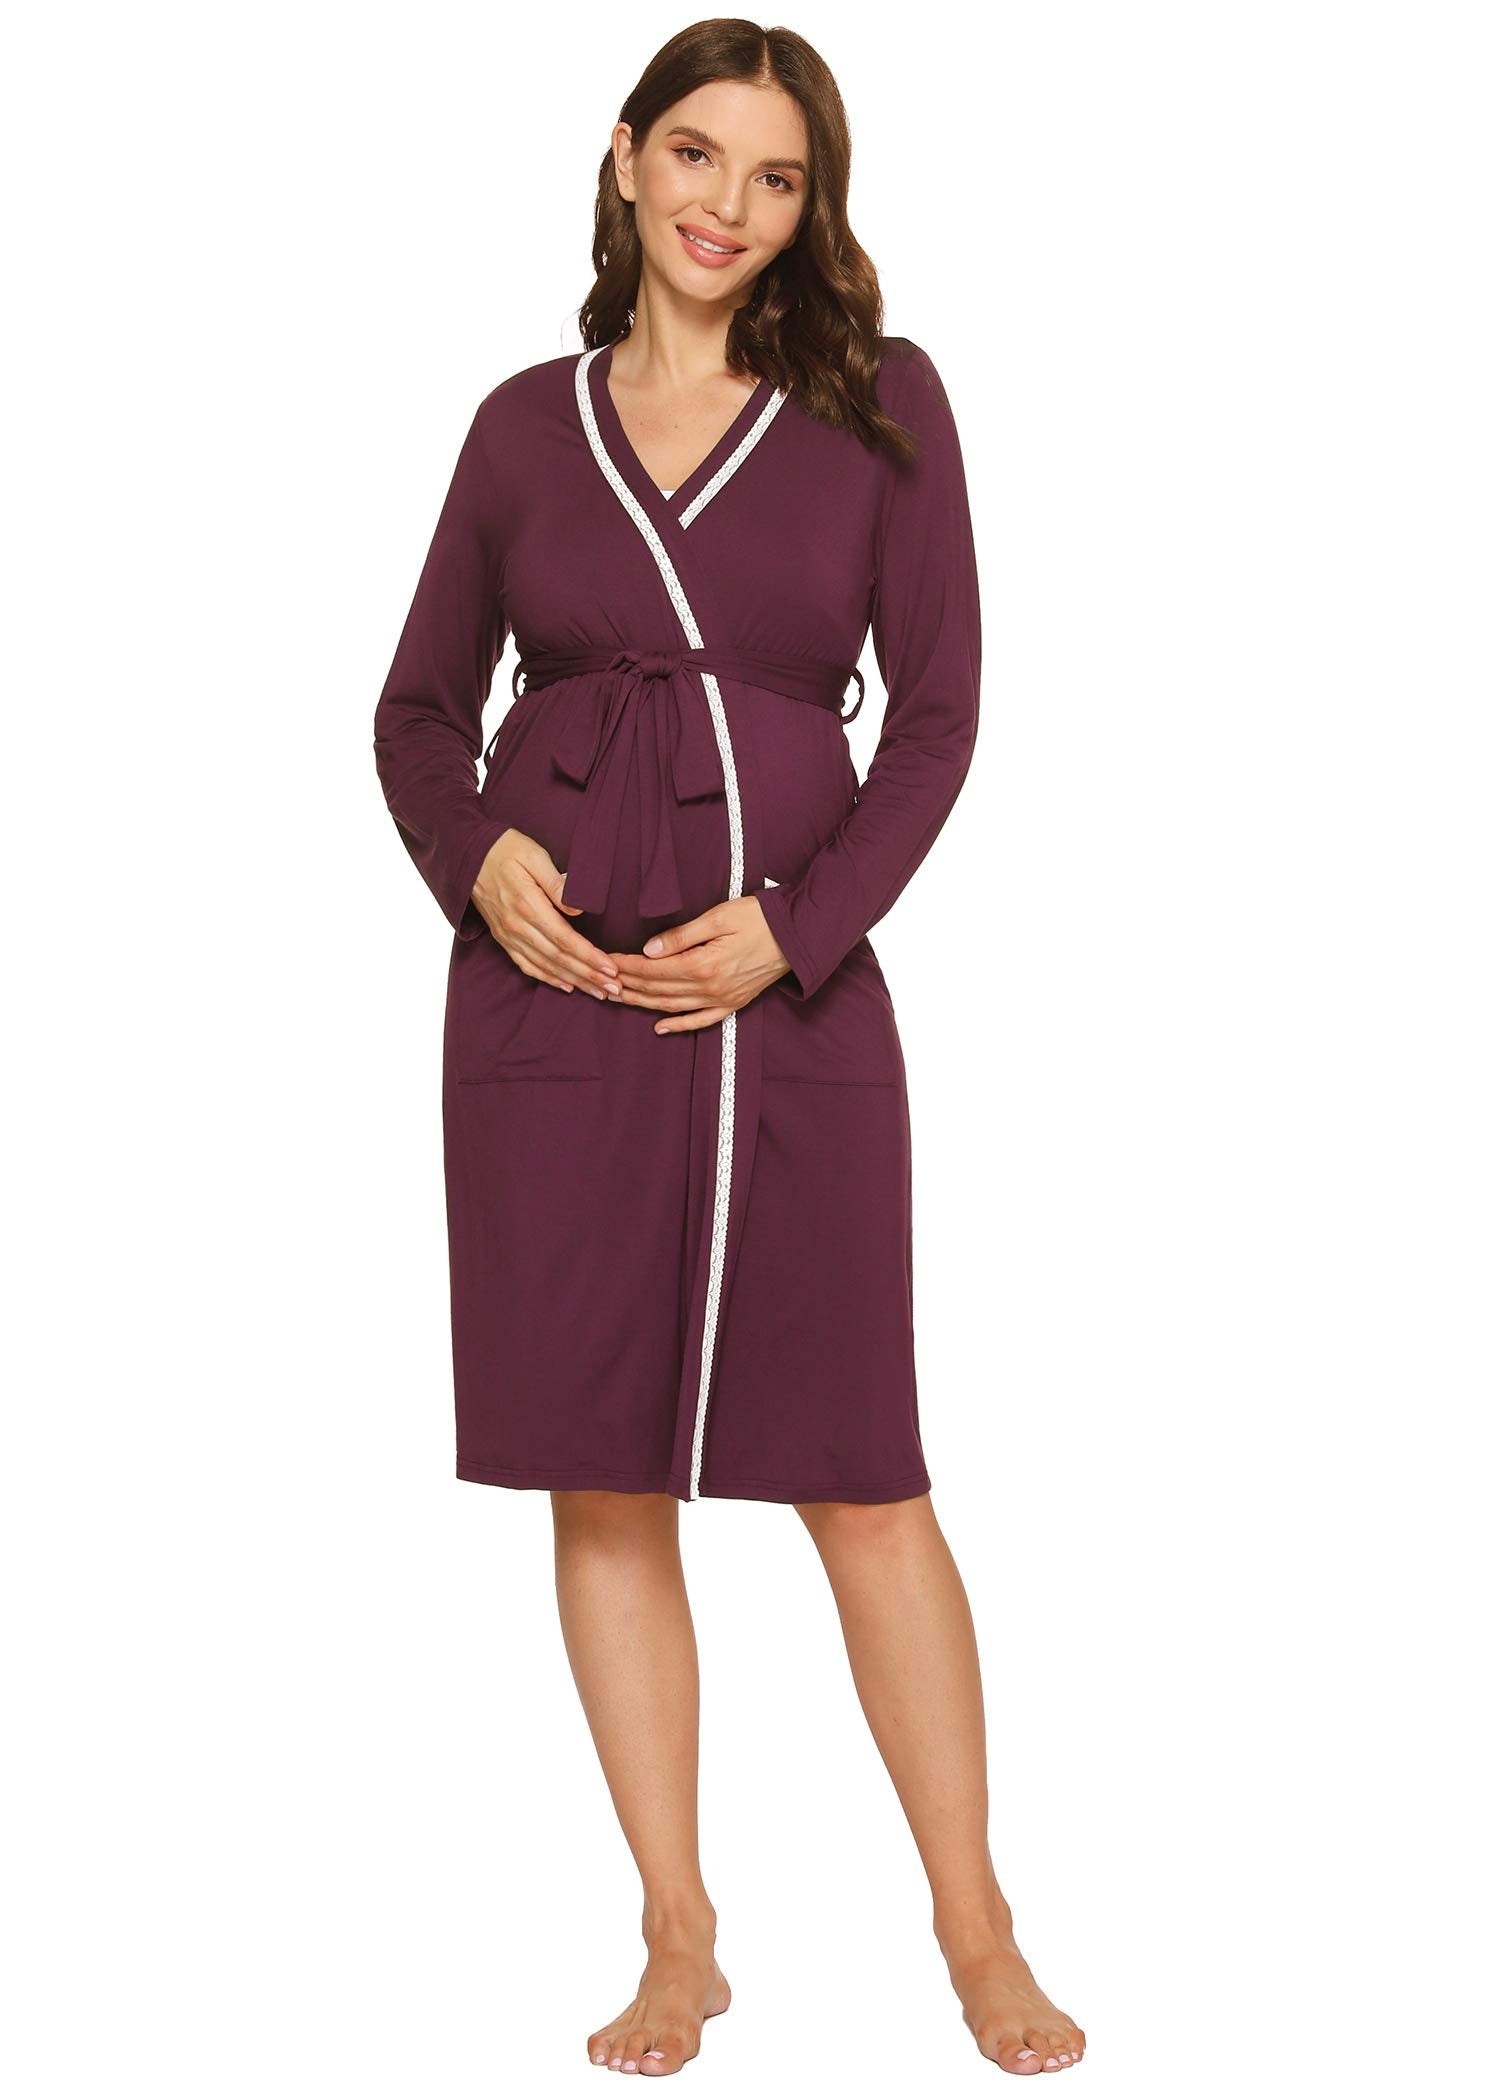 Women's Soft Bamboo Viscose Maternity Nursing Robe - Latuza